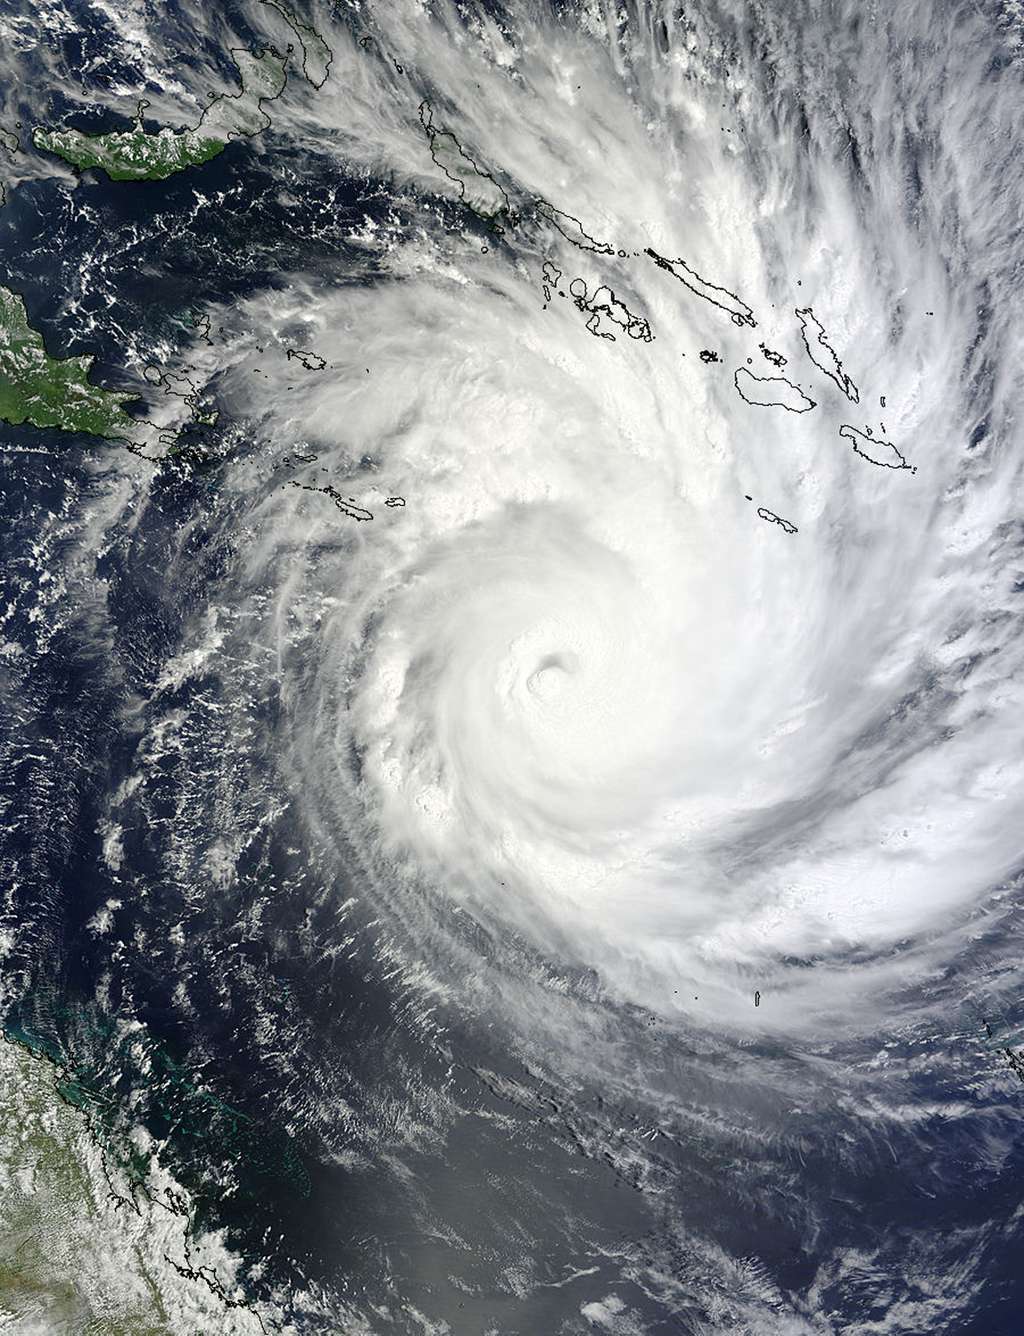 Le cyclone Yasi observé le 31 janvier par l'instrument Modis du satellite Terra (Nasa). En haut à gauche sont figurées les îles Salomon. Le cyclone se dirige vers le sud-ouest (en bas à gauche de l'image, donc). © <em>NASA MODIS Rapid Response Team</em>